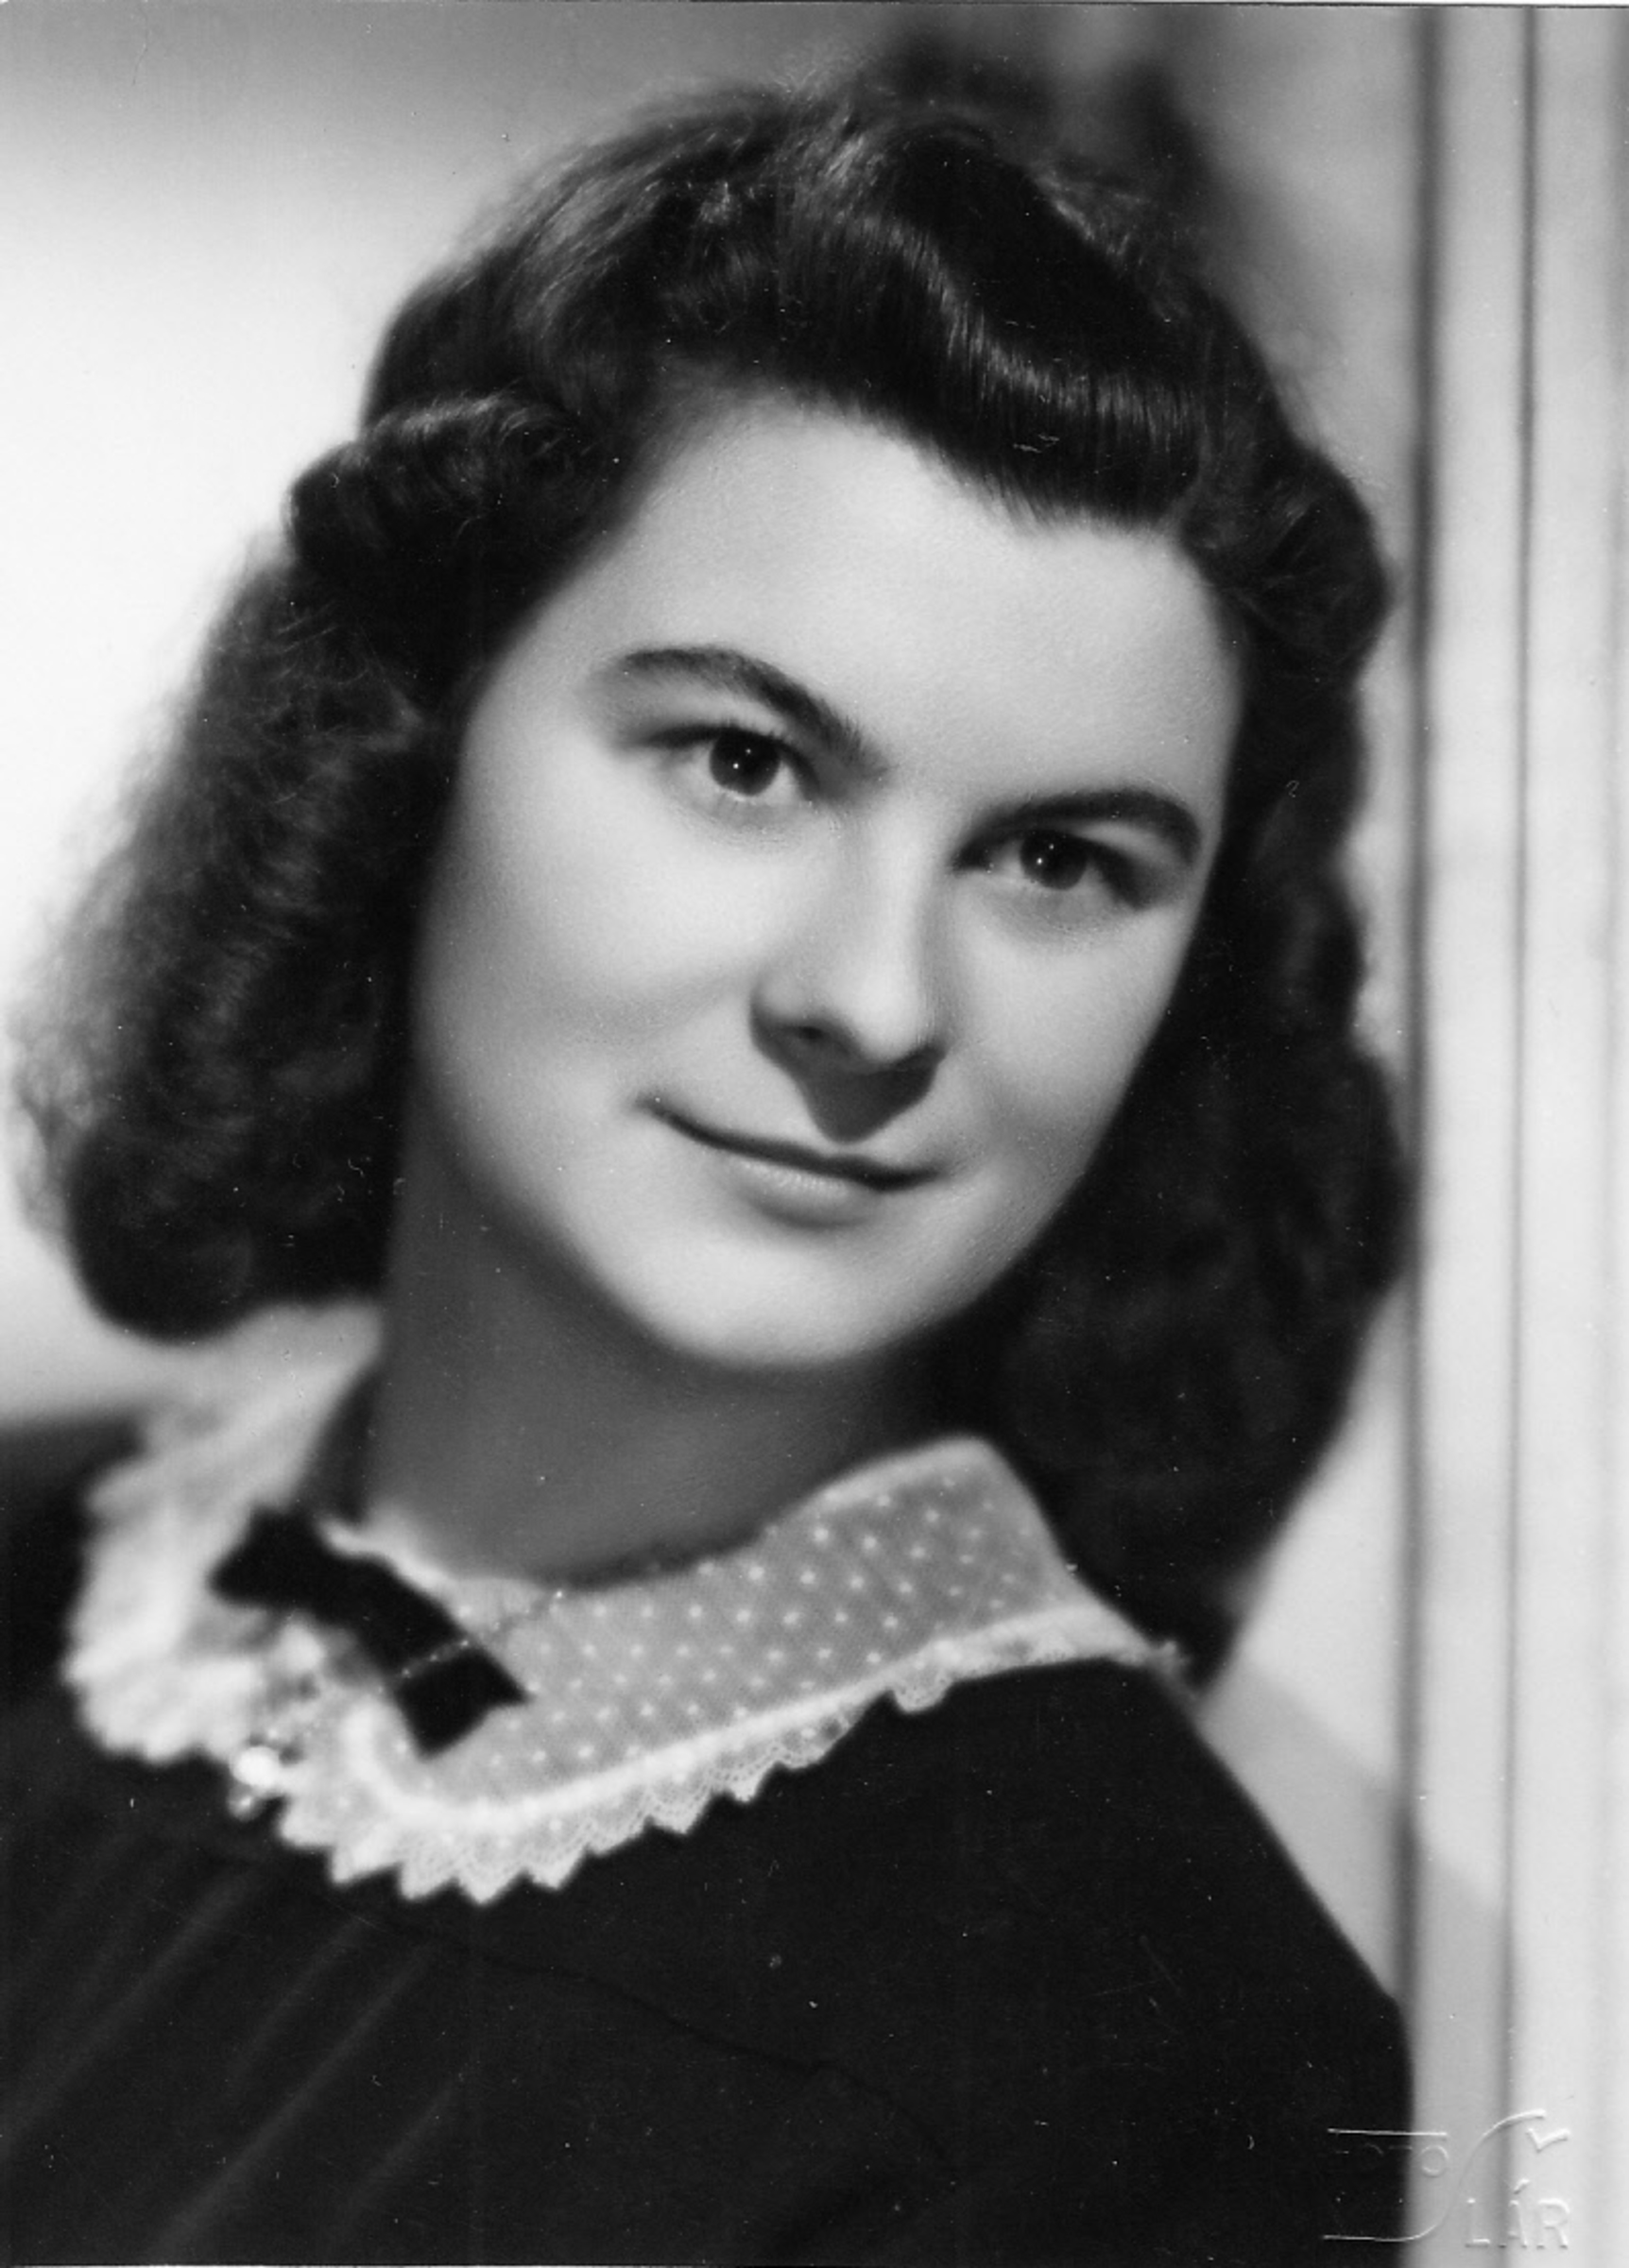 Dagmar Prochazkova, née Weitzenbauerova in 1948 